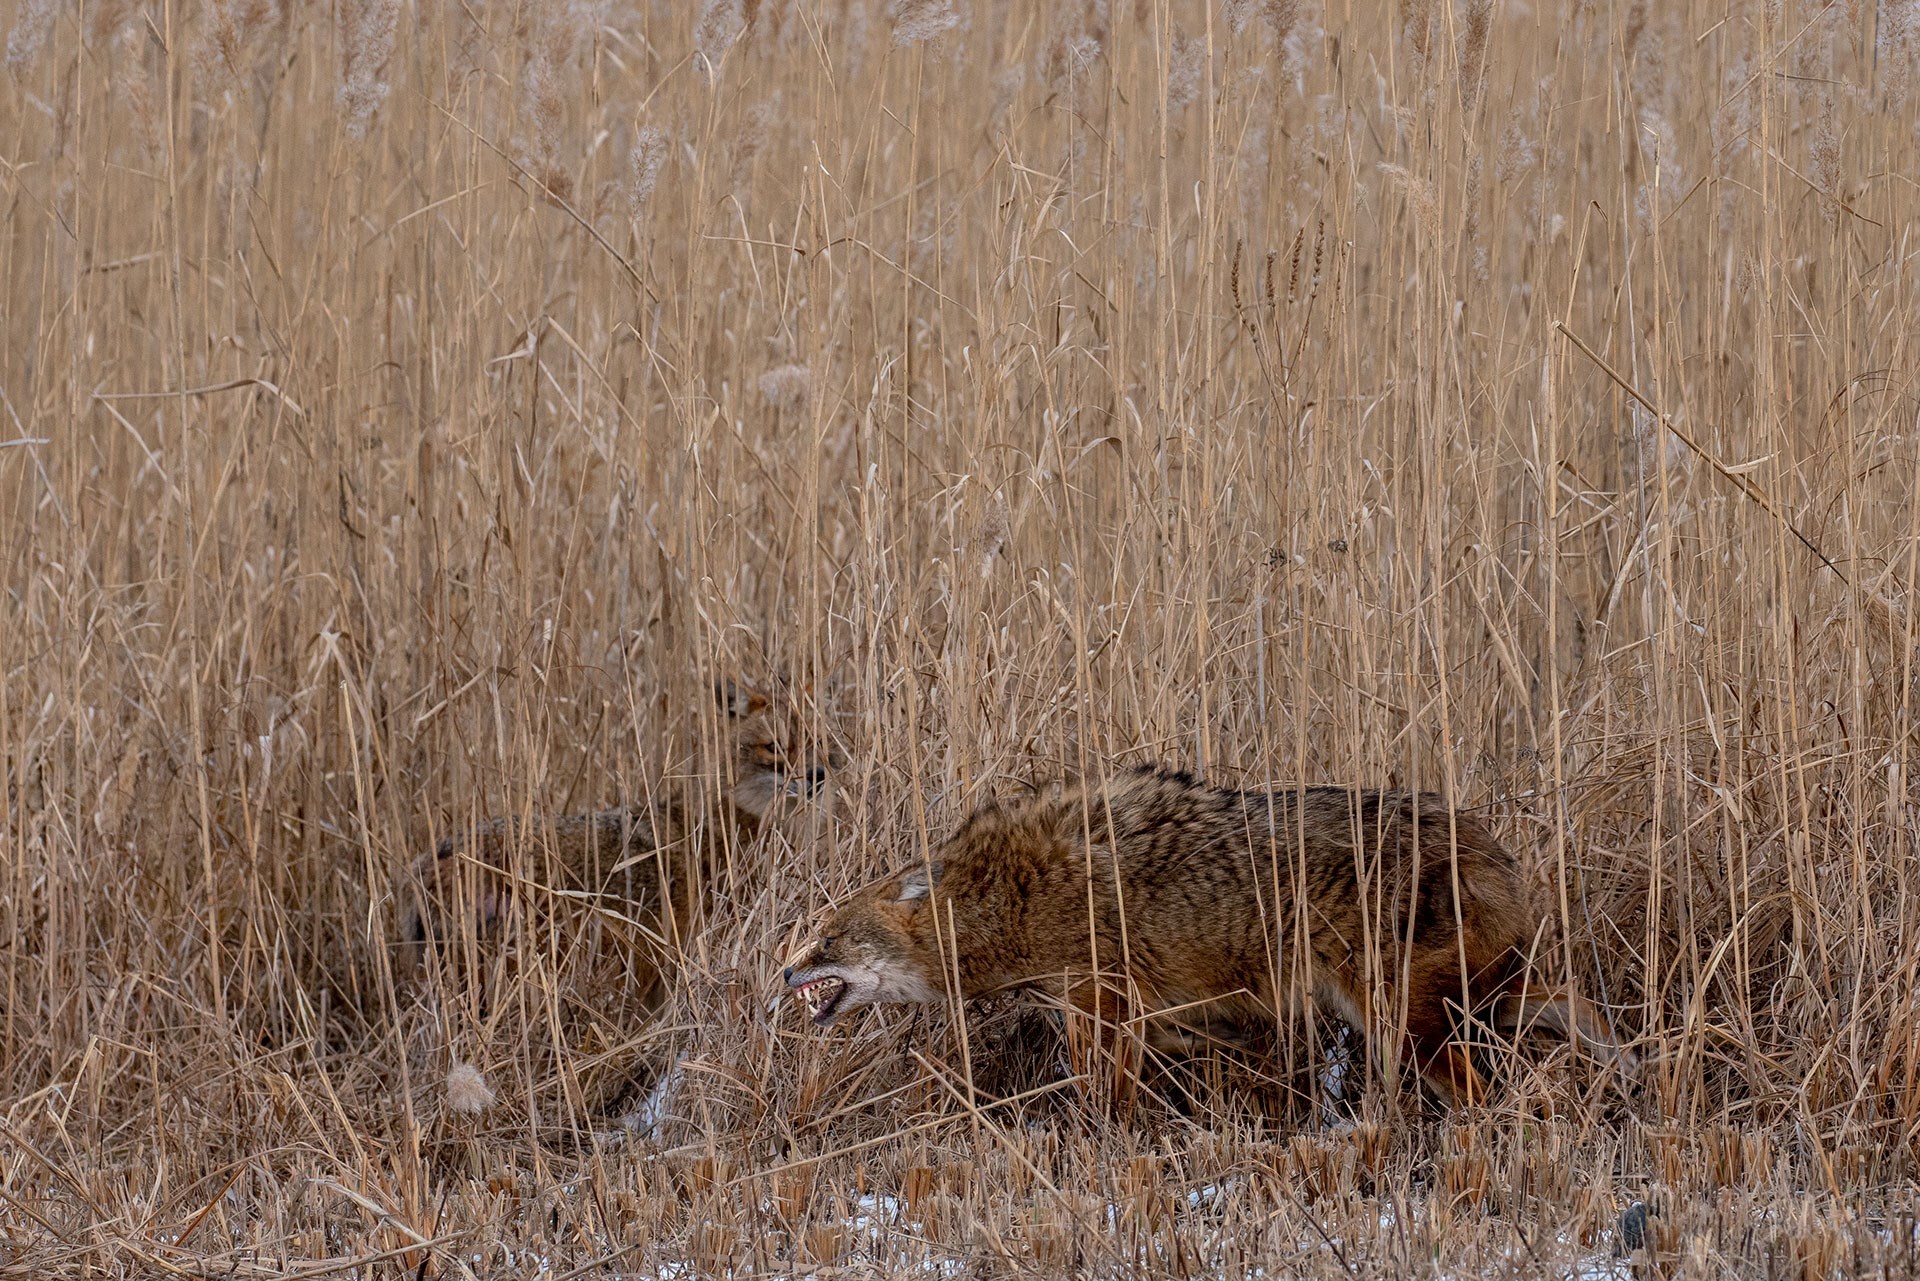 Охота на шакала в Ростовской области